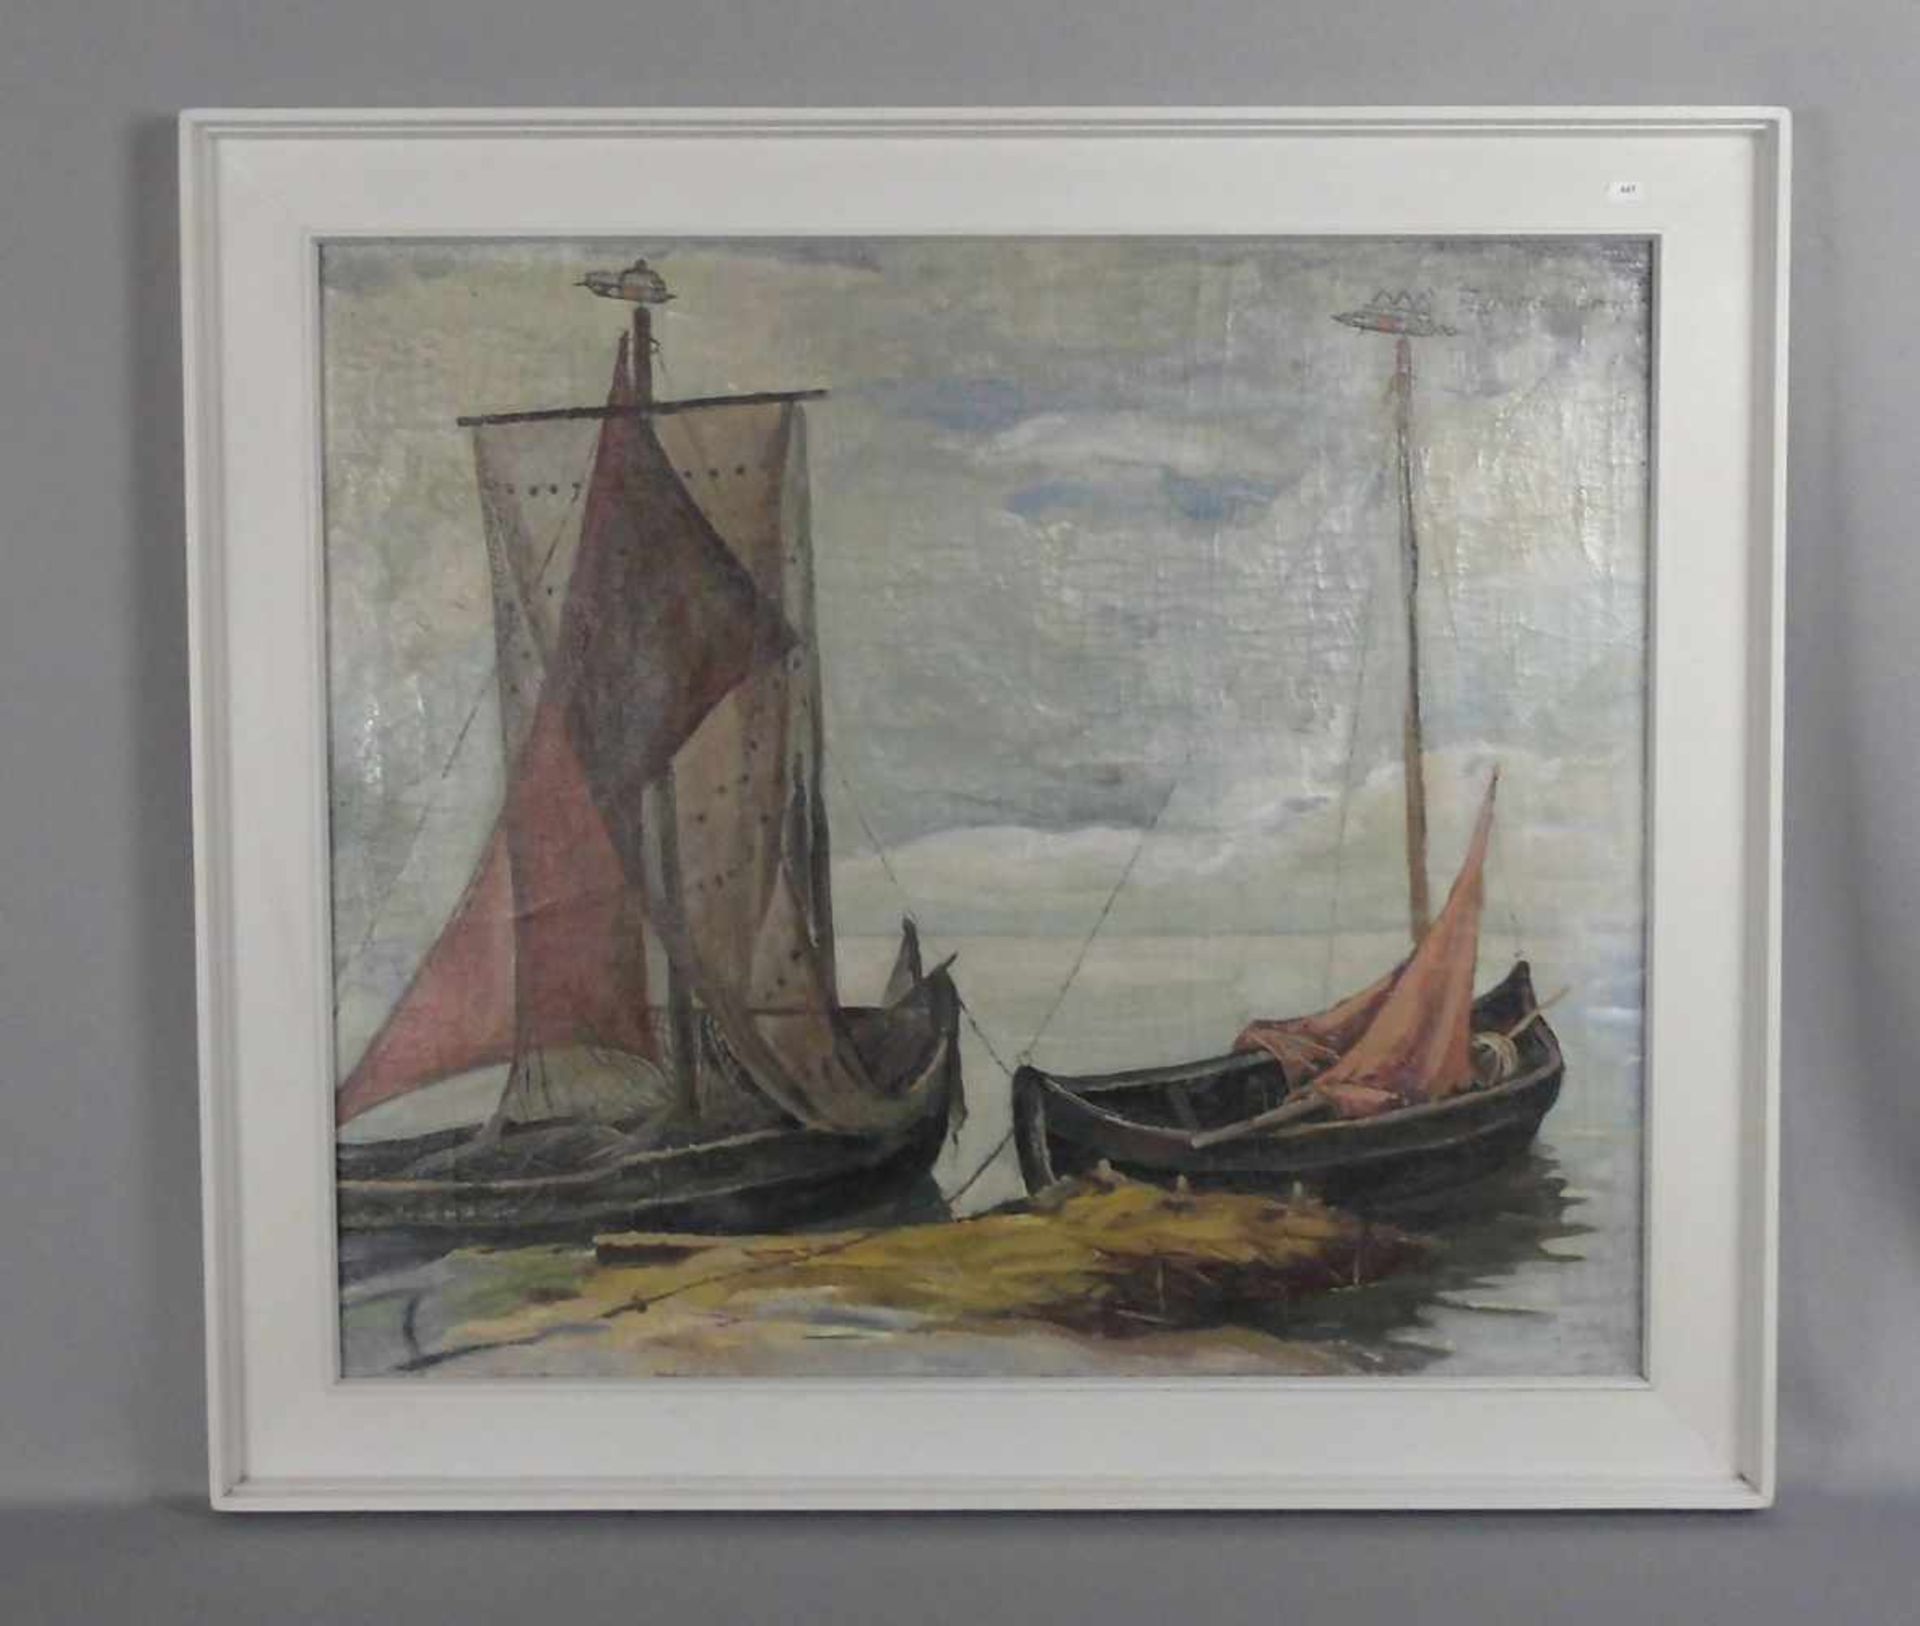 ZIMMMERMANN, L. (19./20. Jh.), Gemälde / painting: "Küste mit Fischerbooten", Mitte 20. Jh.; Öl